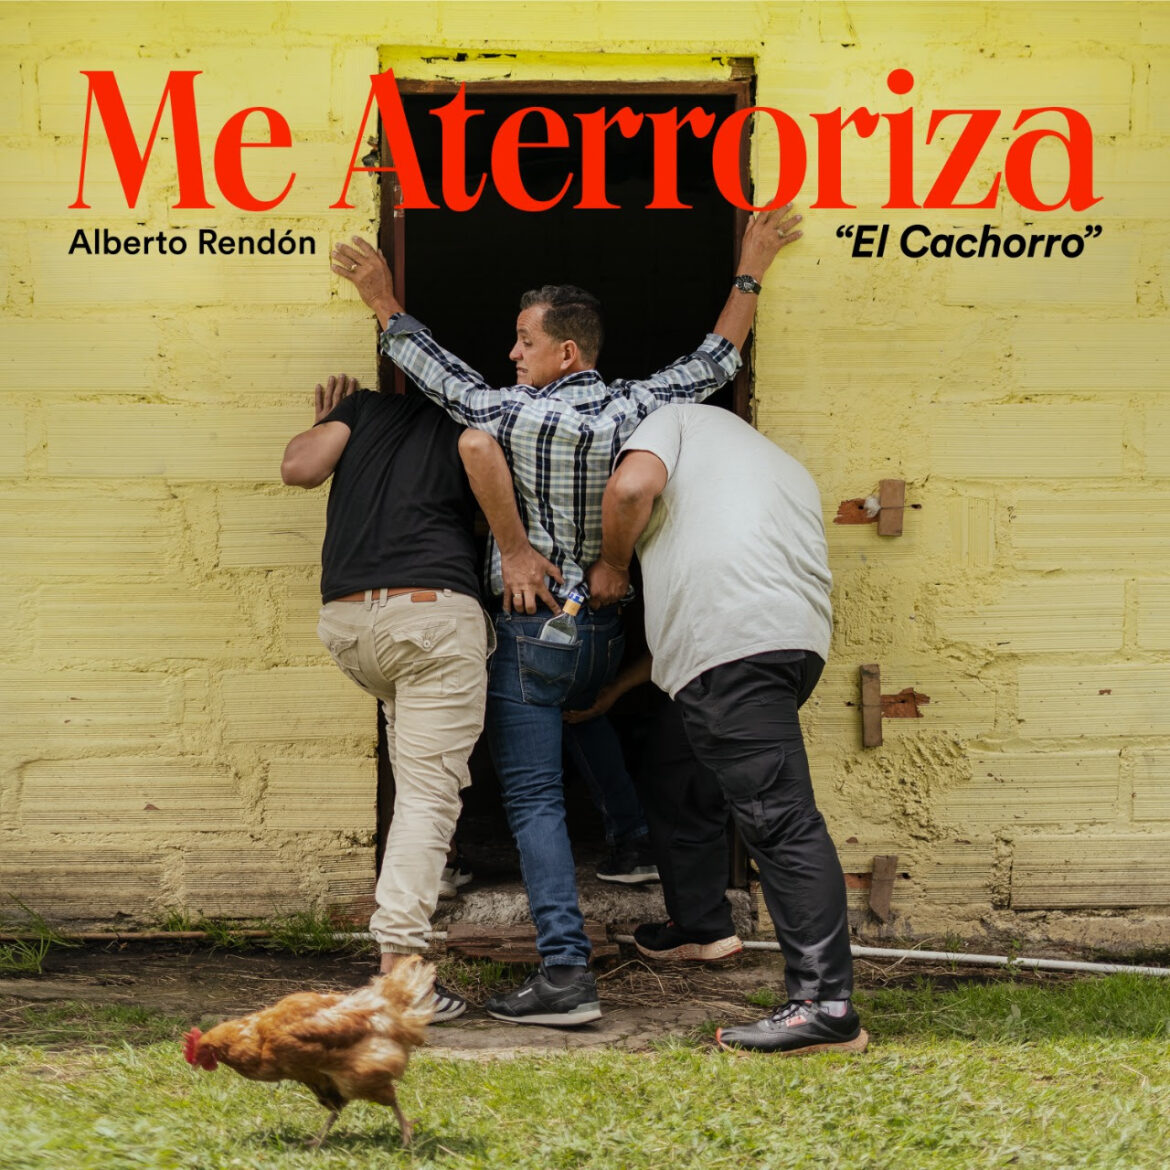 Luis Alberto Rendón “El Cachorro” presenta su nuevo sencillo “Me Aterroriza”